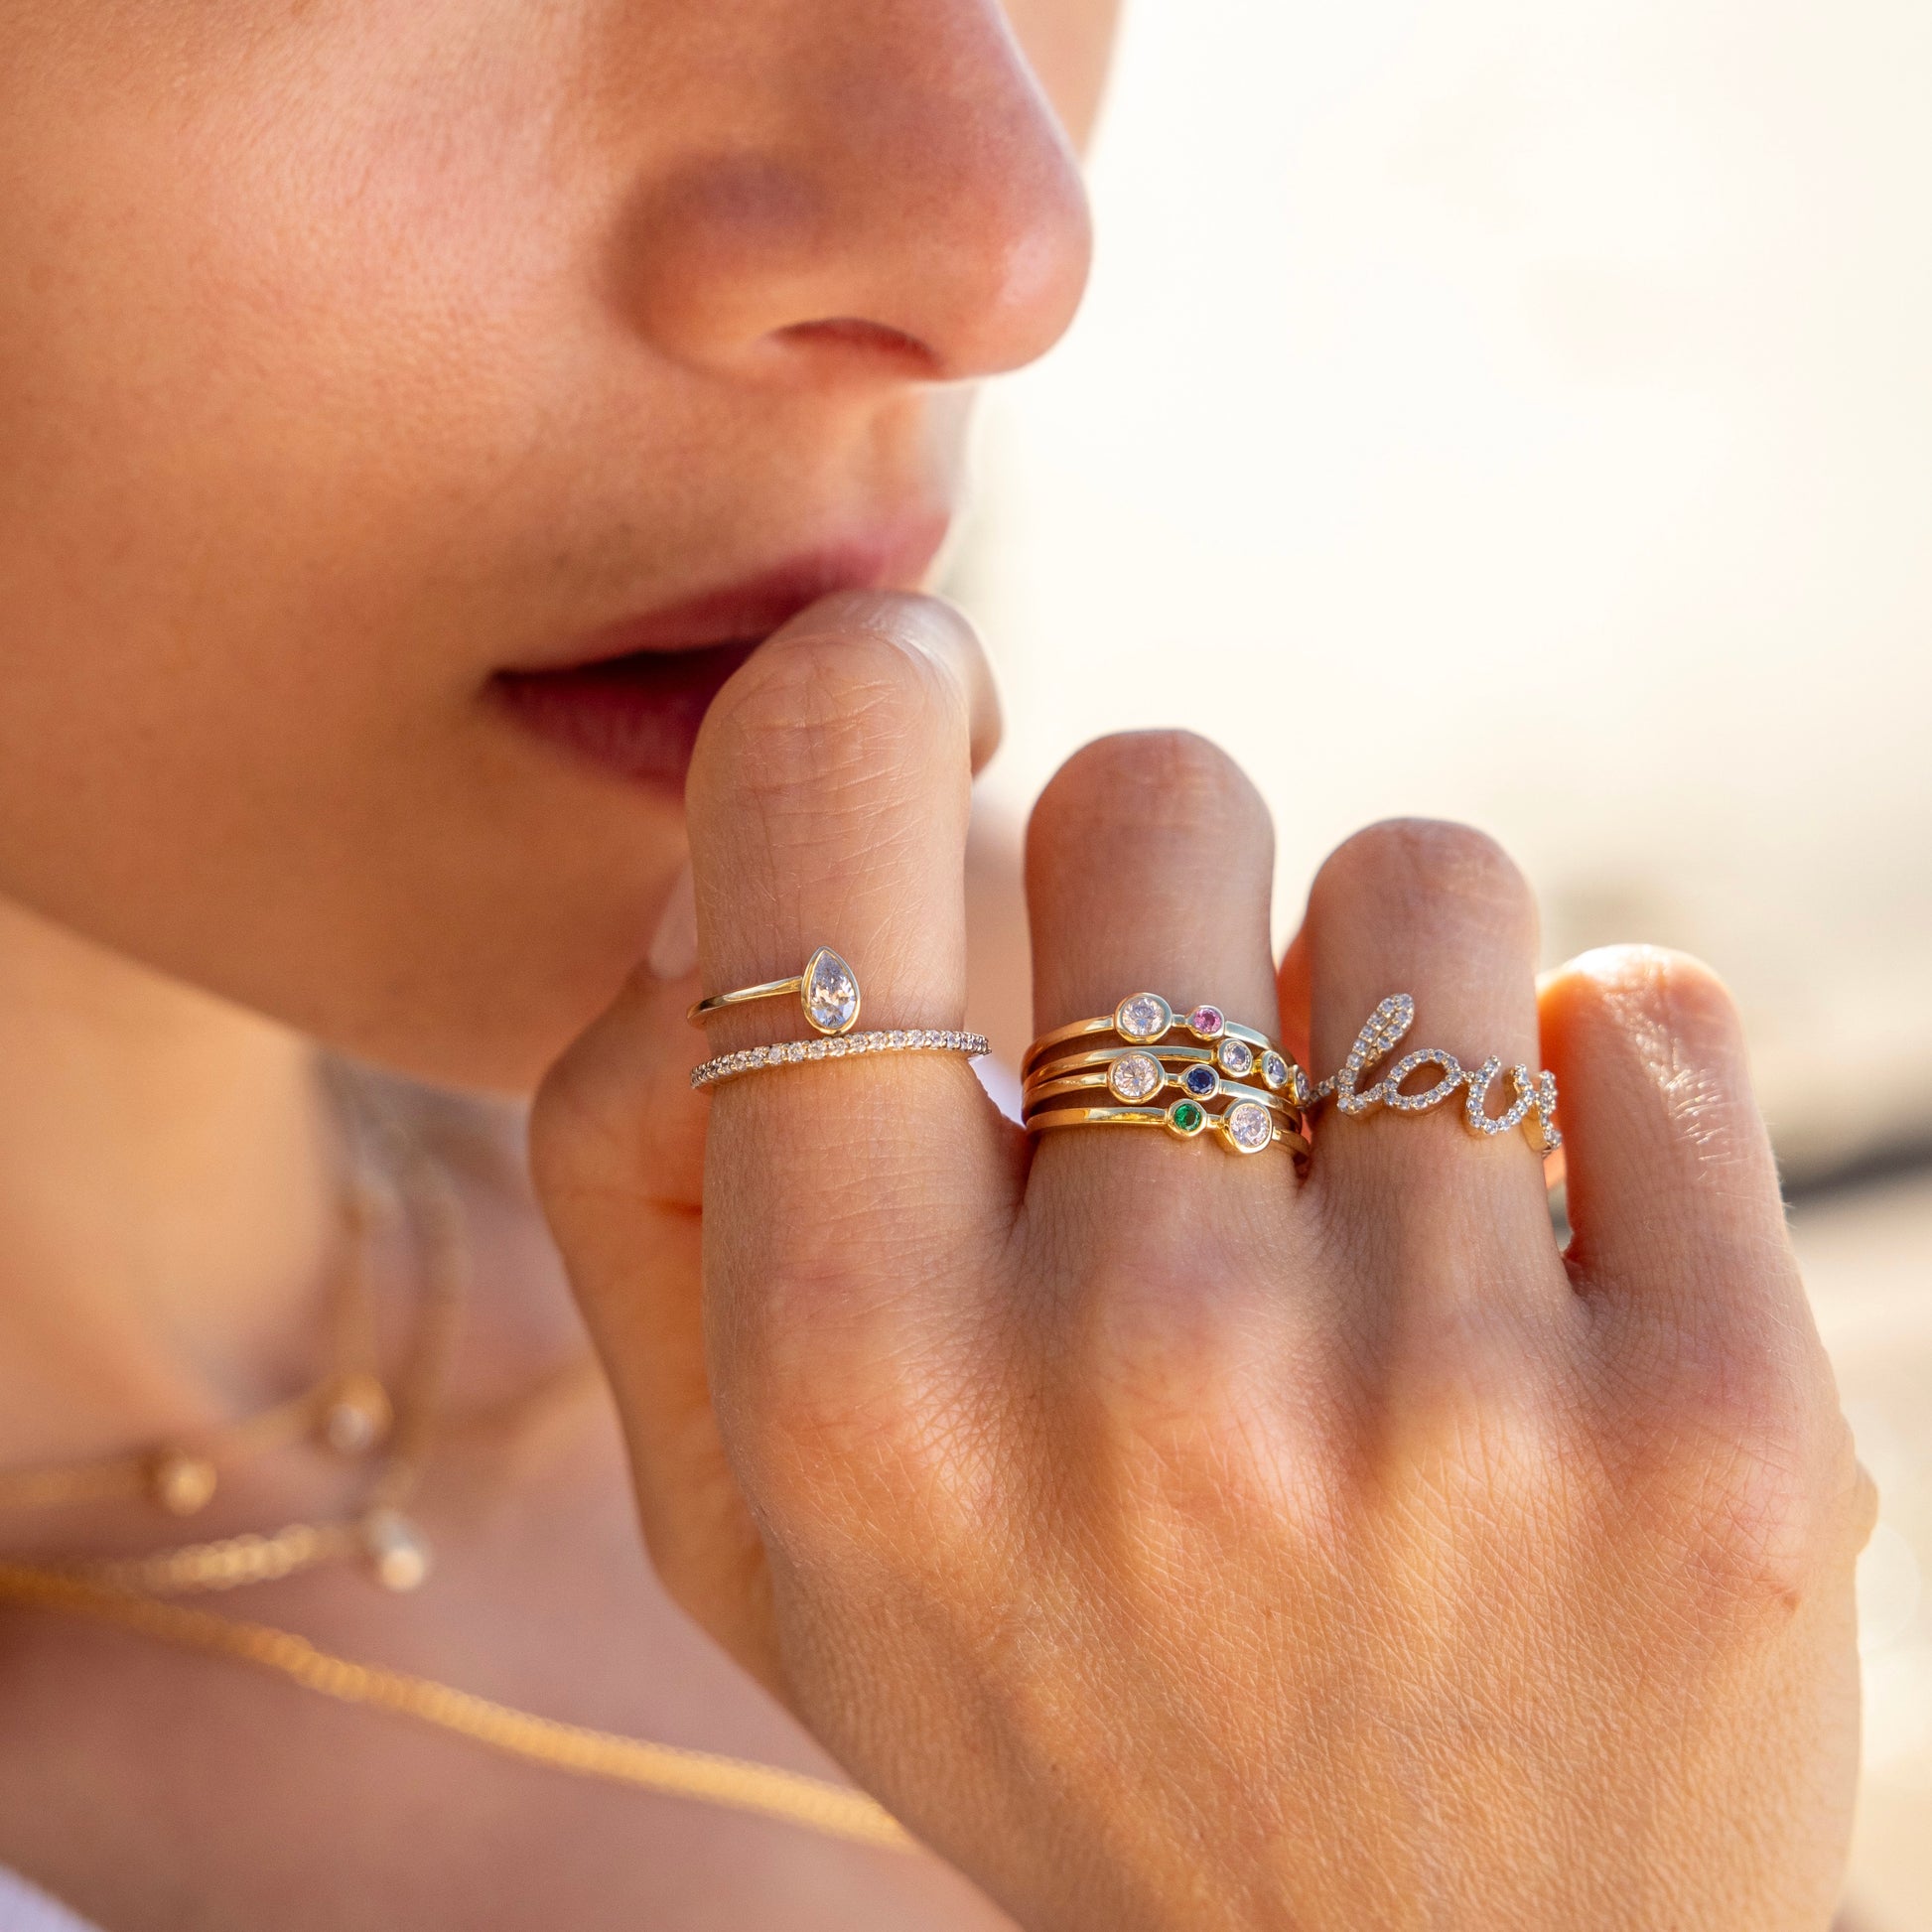 "Love" Pavé Diamond Ring - - Jewelry - Goldie Paris Jewelry - Pavé Ring statement